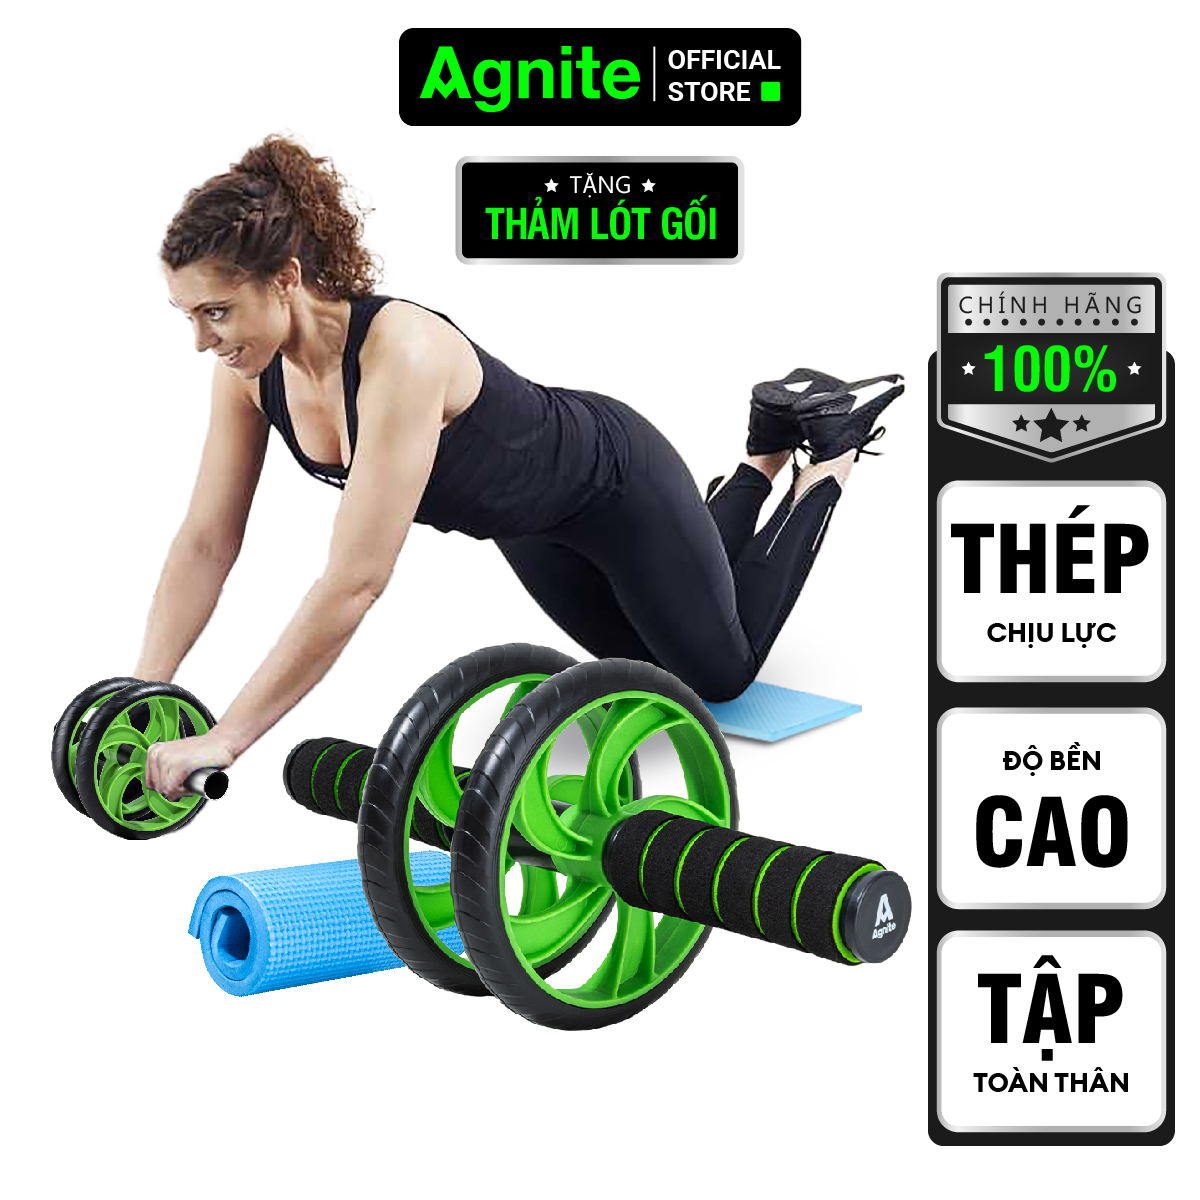 Hình ảnh Con lăn tập bụng Agnite chính hãng, dụng cụ hỗ trợ gym tại nhà tiện lợi nhỏ gọn TẶNG kèm thảm lót gối - ER010